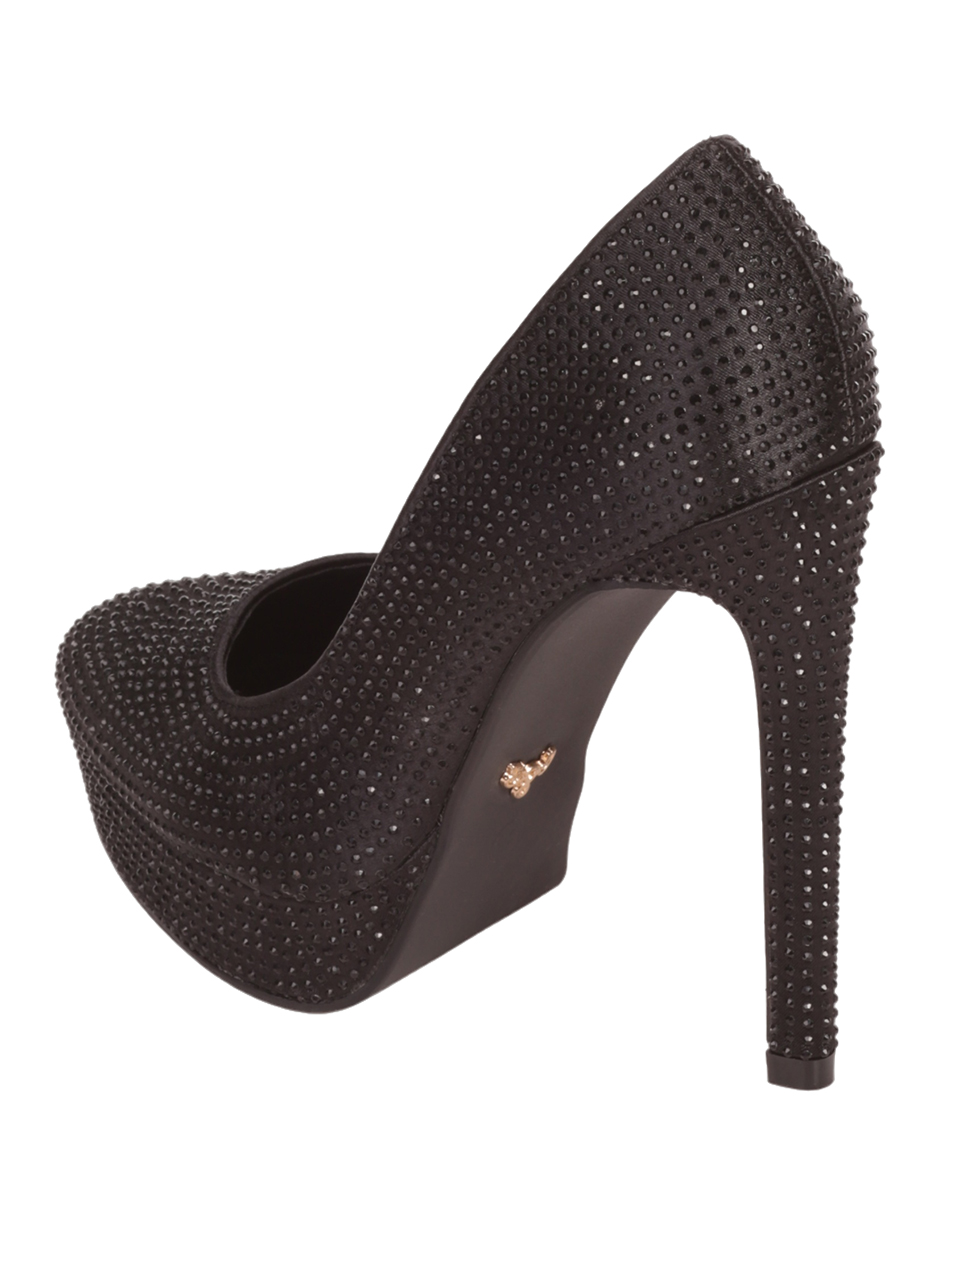 Елегантни дамски обувки с декоративни камъни в черно 3M-23530 black